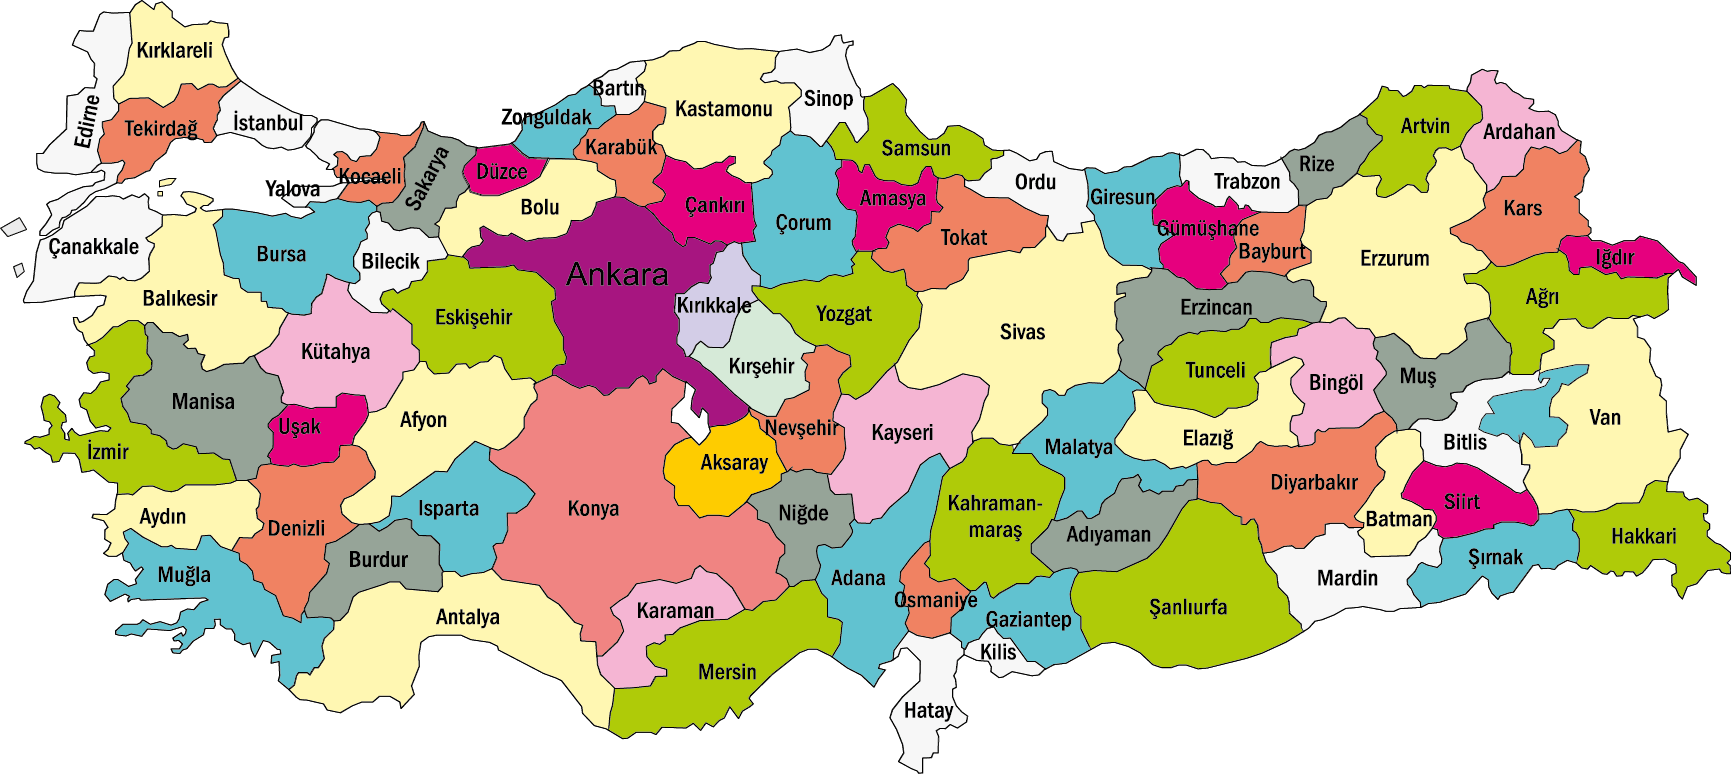 Turkey Map - Türkiye Haritas?